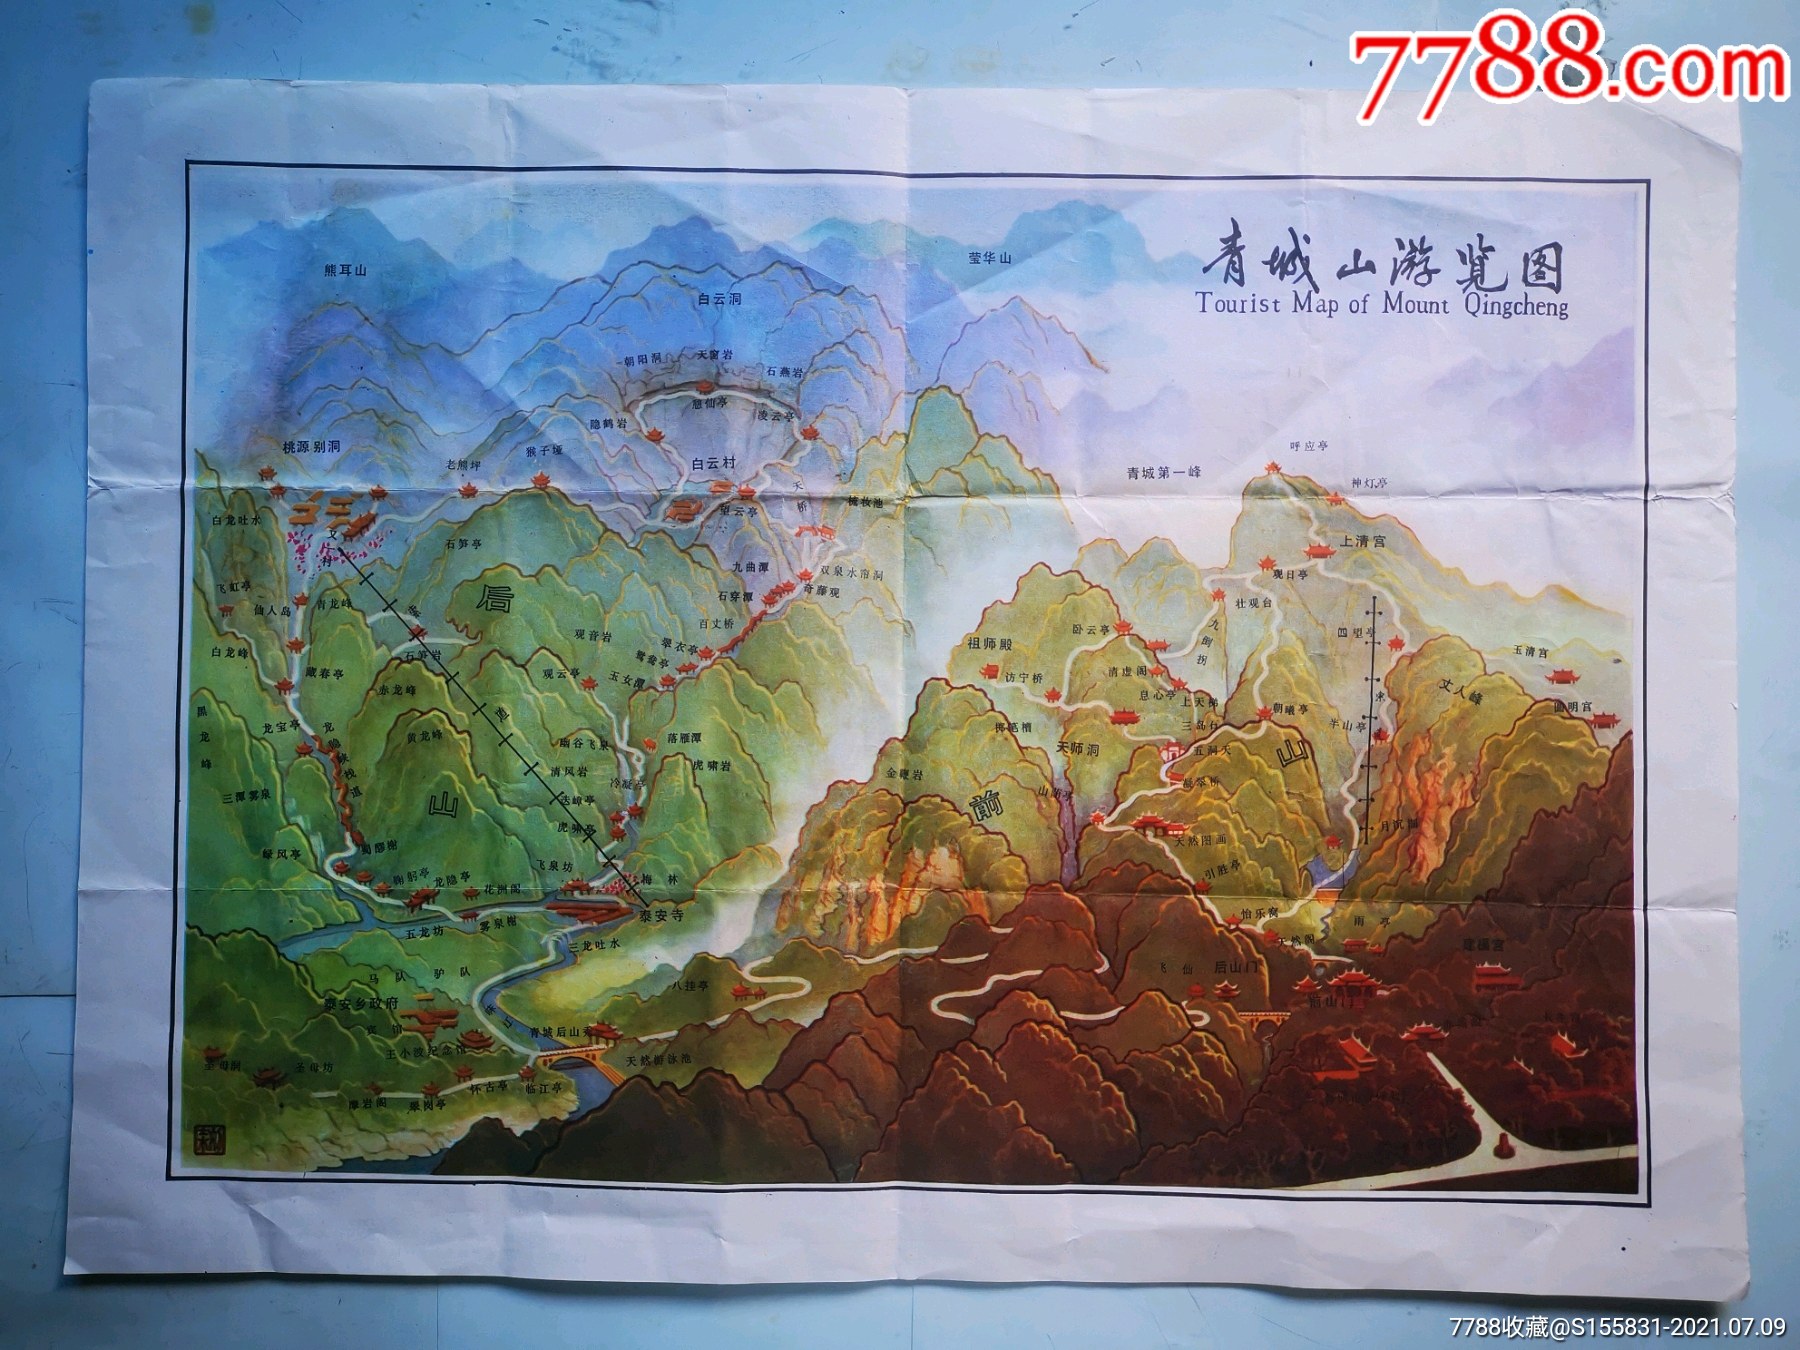 《青城山》交通旅游地图一件